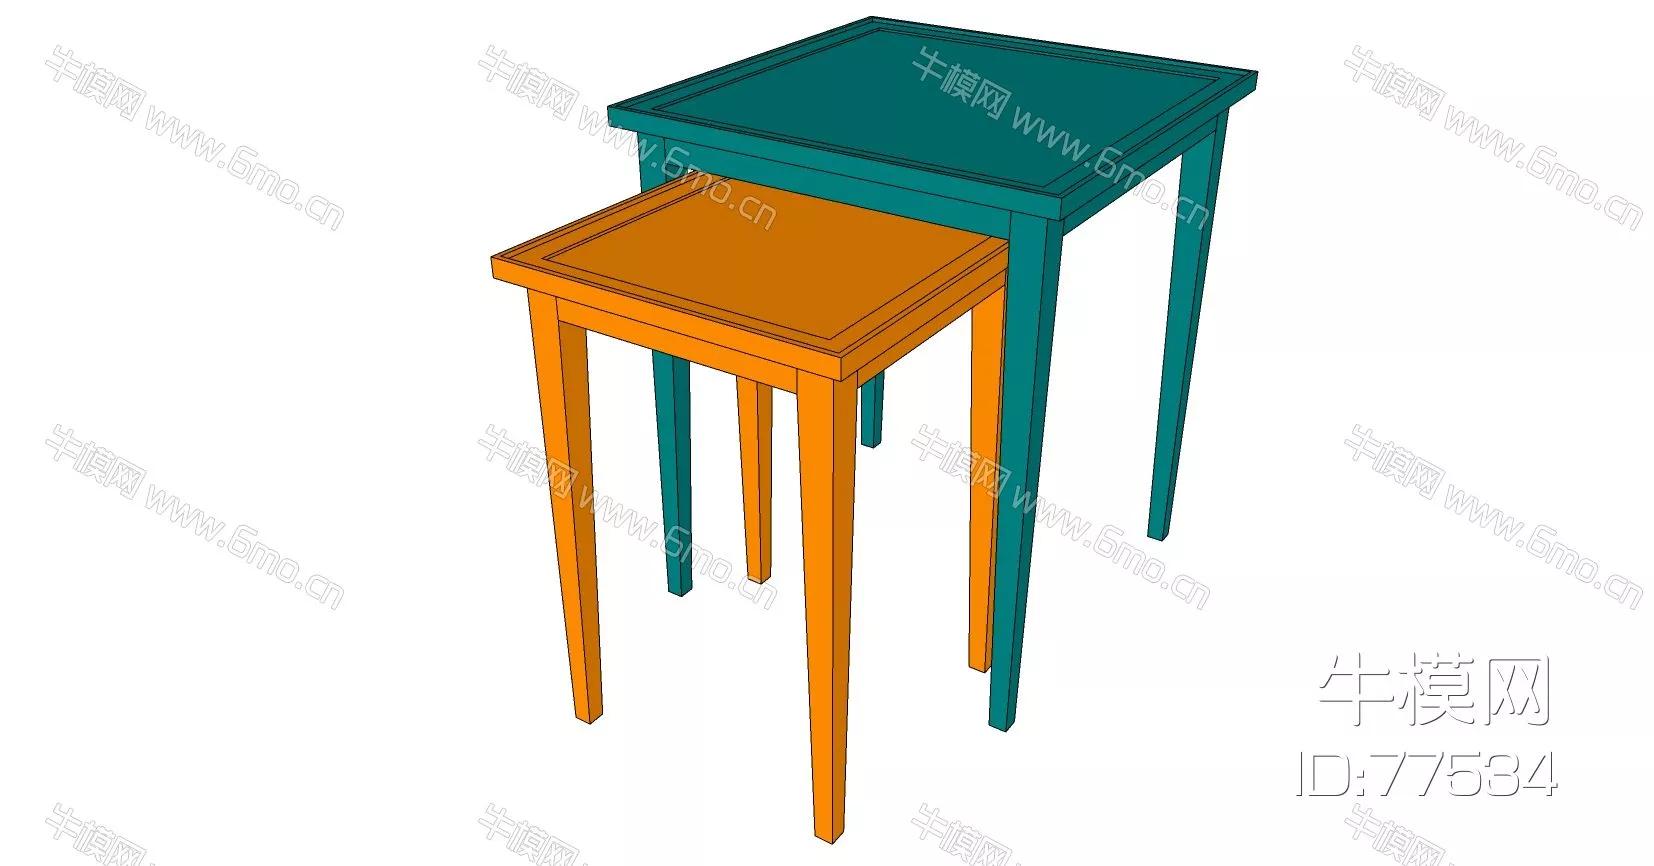 MODERN SIDE TABLE - SKETCHUP 3D MODEL - ENSCAPE - 77534